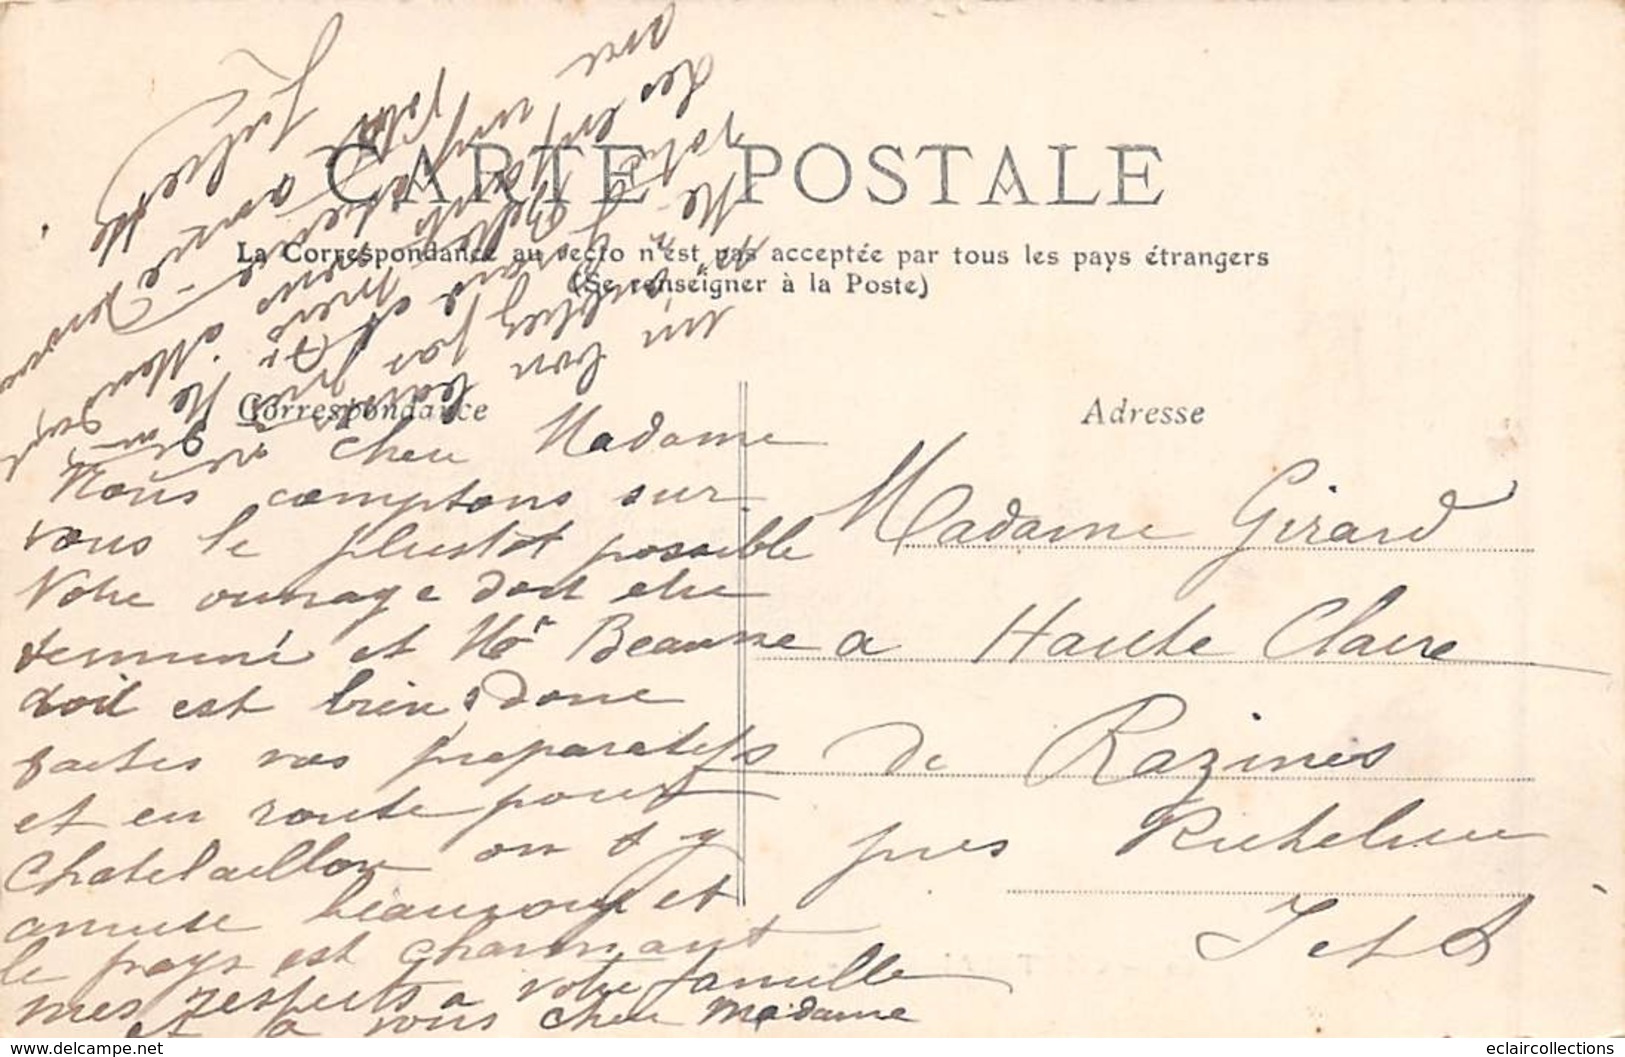 Chatelaillon       17       Lot de cinq  cartes dont: Rue Carnot, de la République et gare   (voir scan)